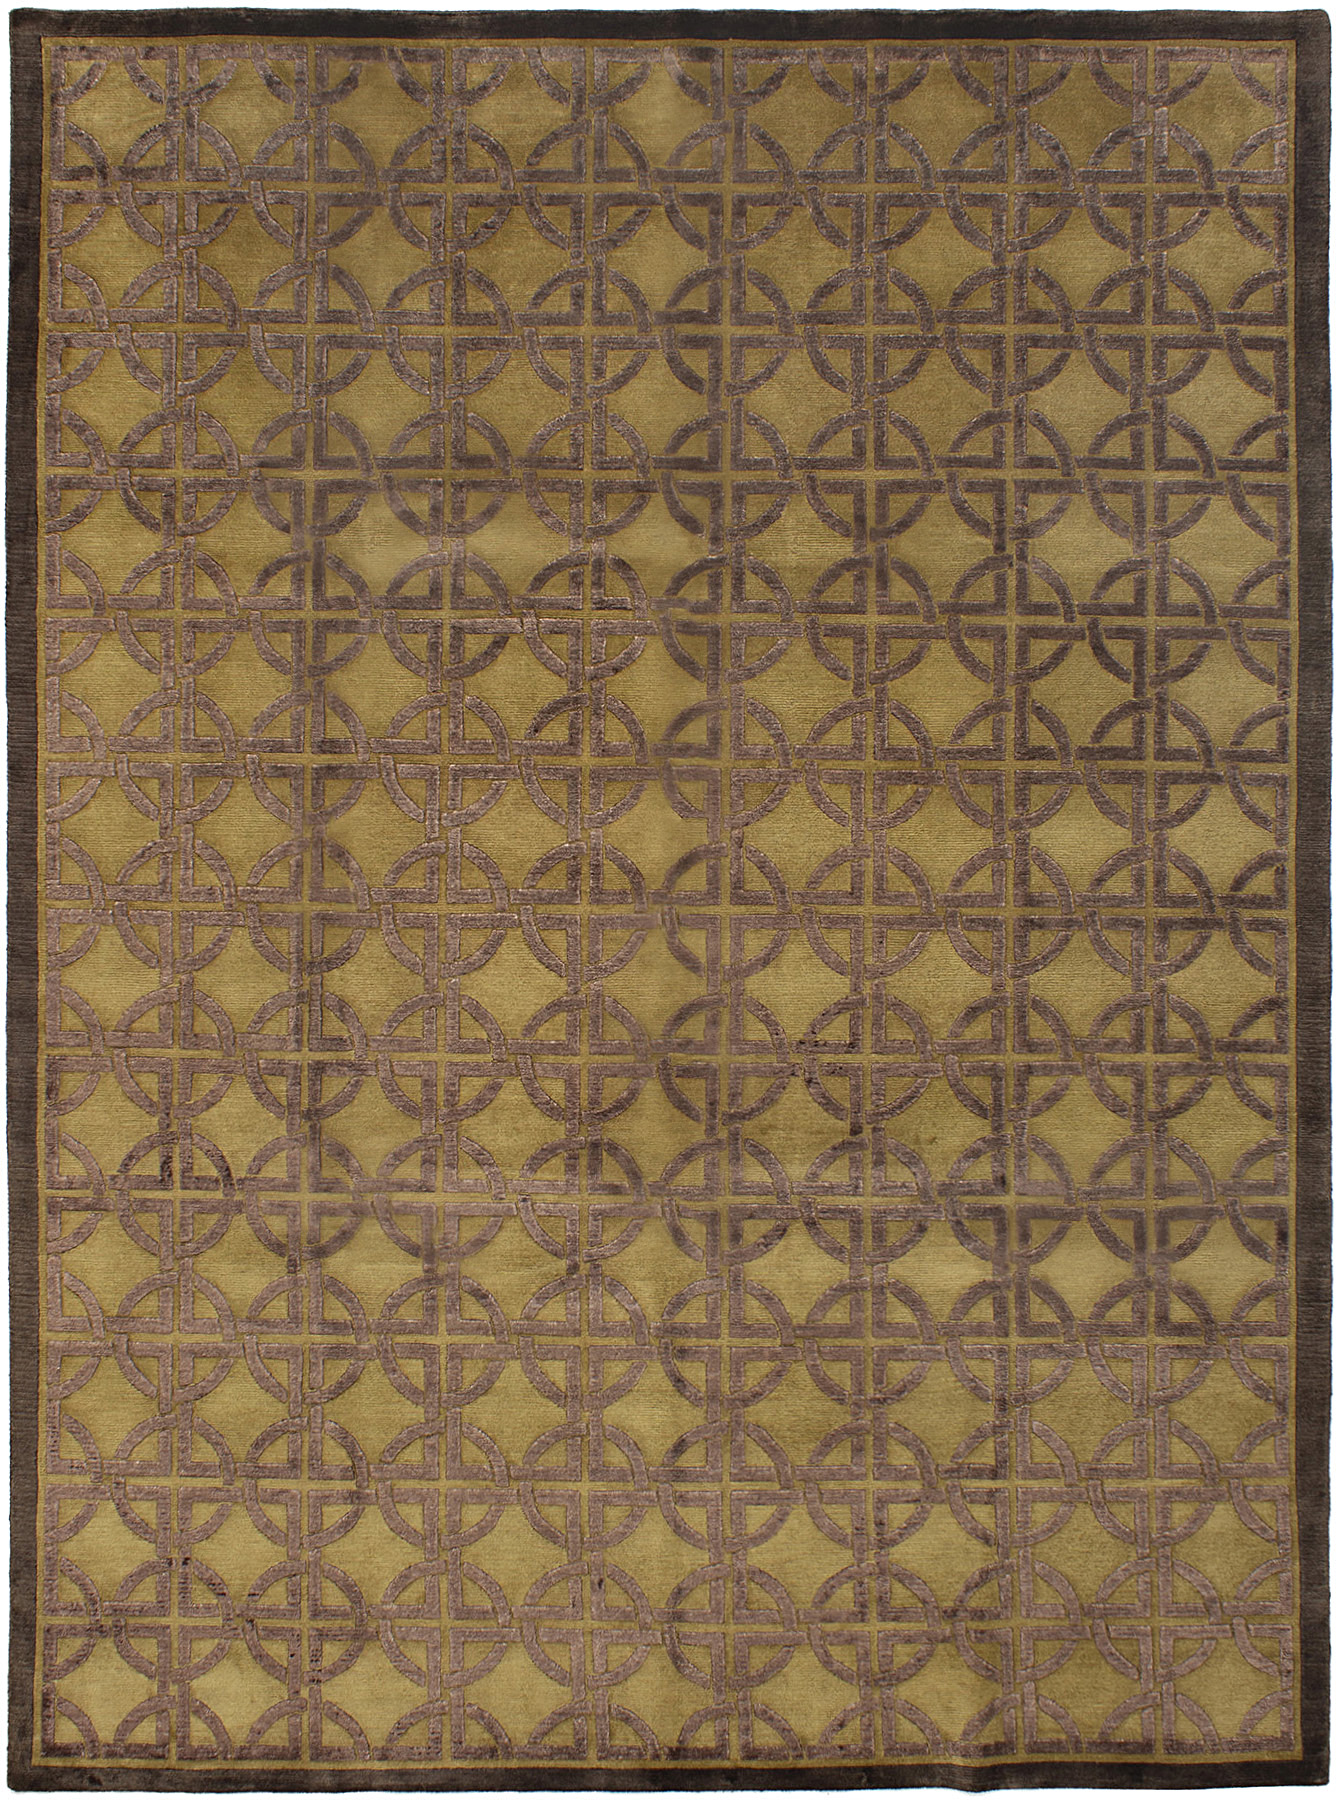 Hand-knotted Silk Touch Dark Brown Wool/Silk Rug 8'6" x 11'6" Size: 8'6" x 11'6"  